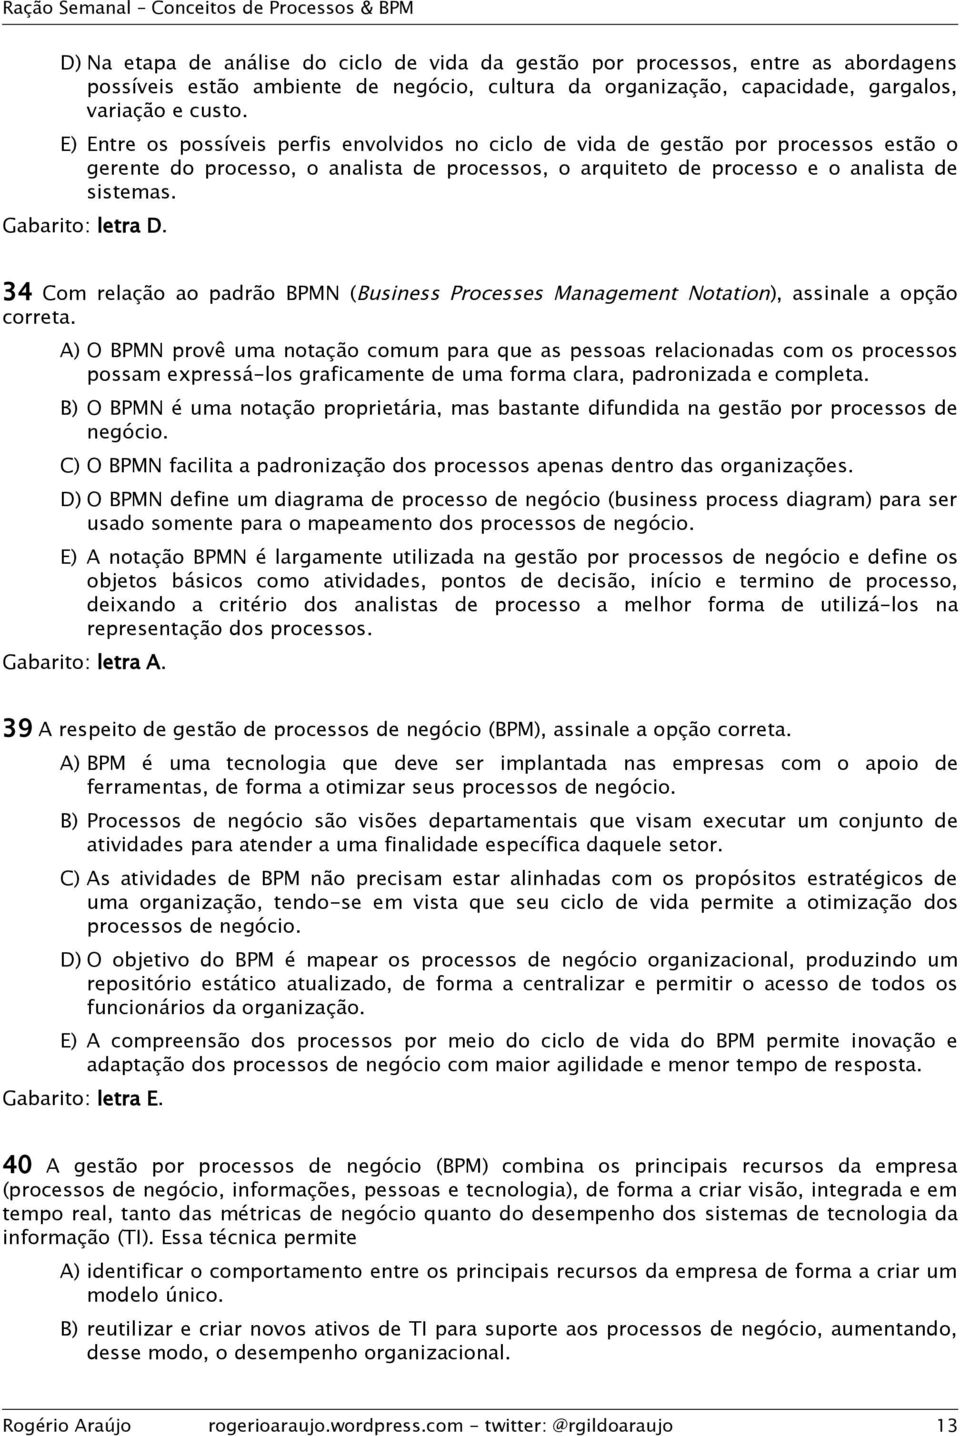 Gabarito: letra D. 34 Com relação ao padrão BPMN (Business Processes Management Notation), assinale a opção correta.